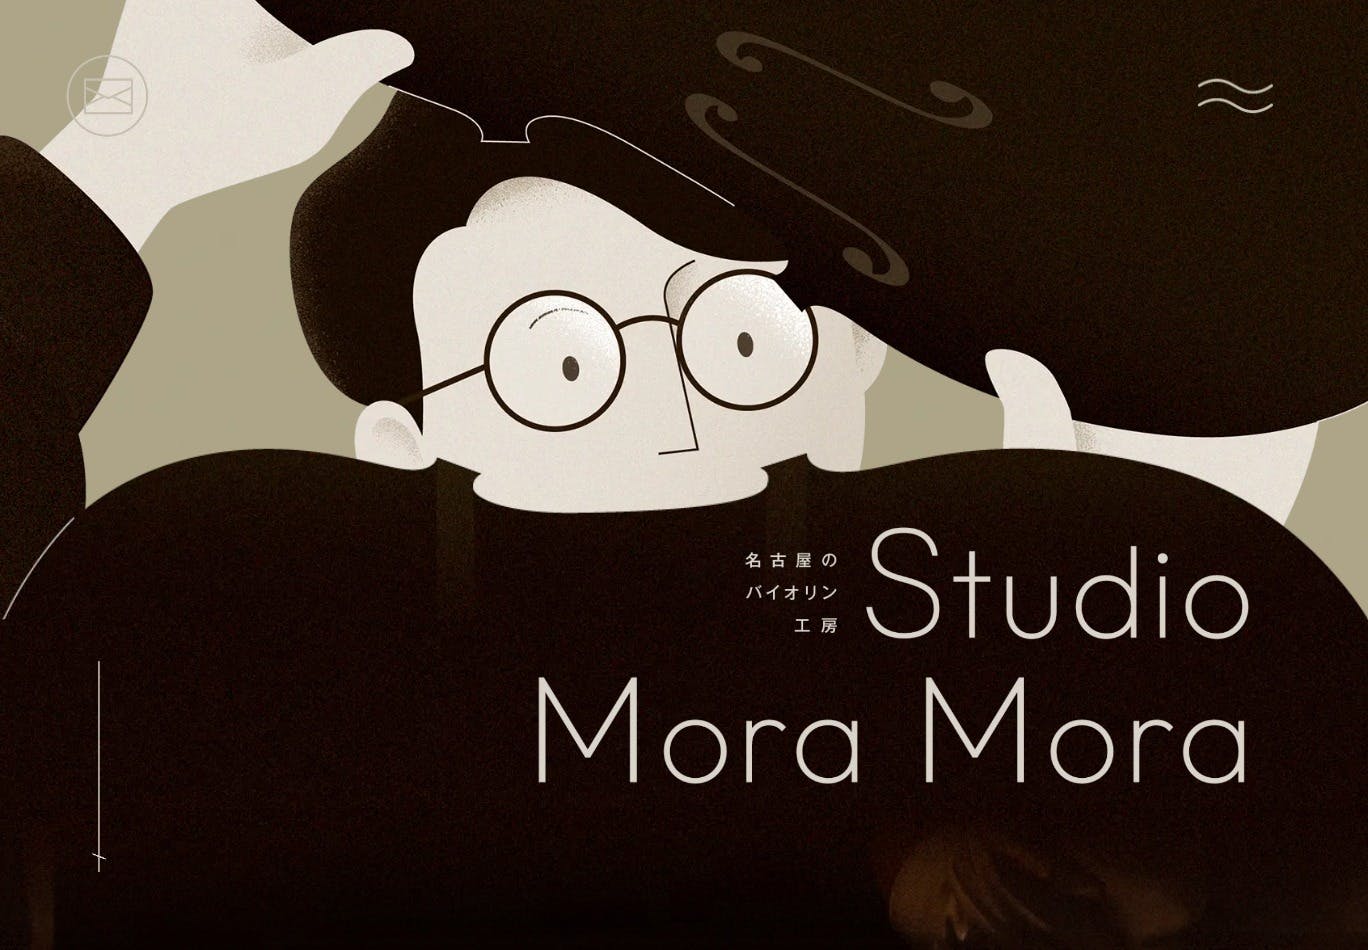 Cover Image for バイオリン工房 Studio Mora Mora